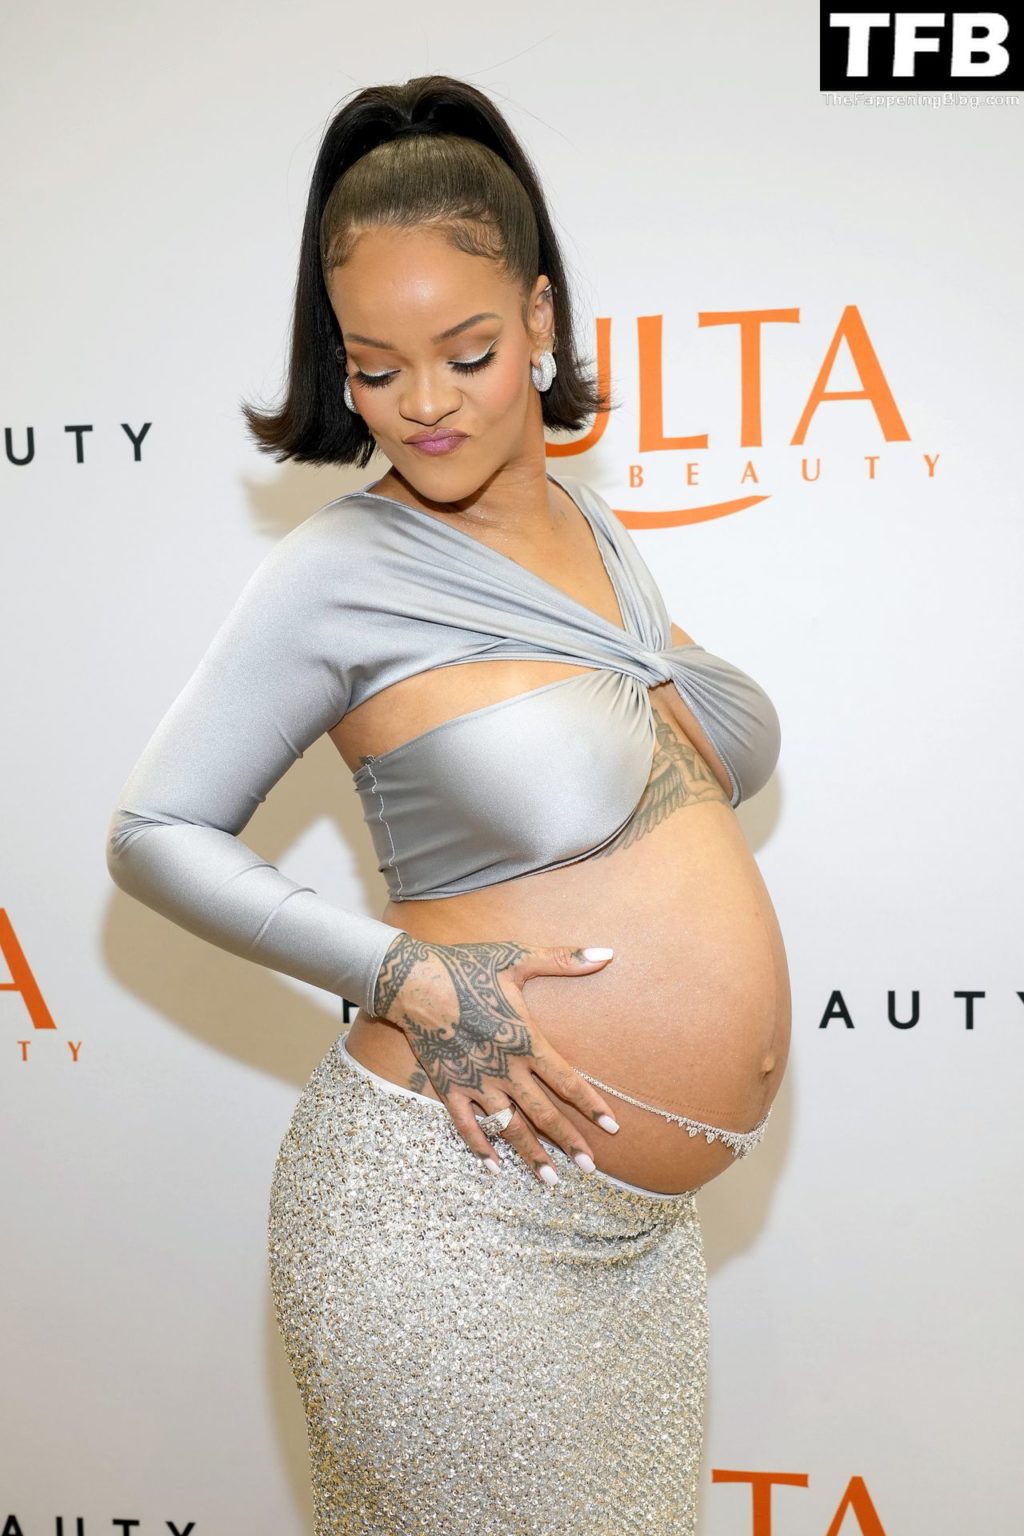 Rihanna Sexy The Fappening Blog 20 4 1024x1536 - Rihanna Celebrates the Launch of Fenty Beauty at Ulta Beauty (28 Photos)